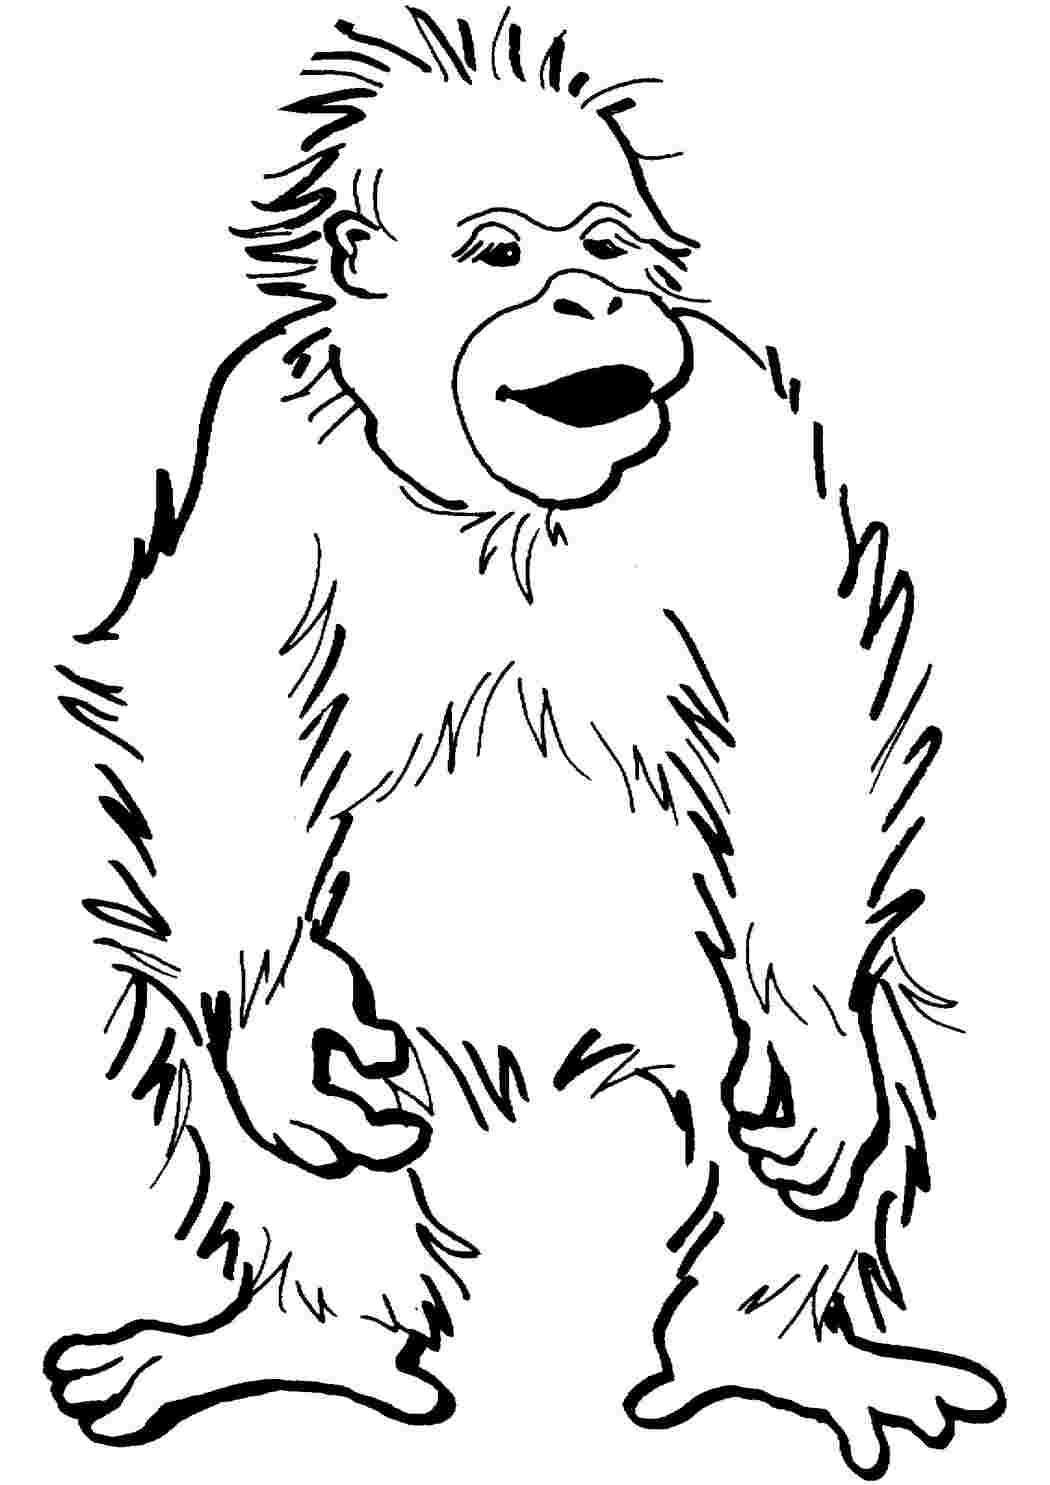 Раскраски Раскраска Раскраска счастливый малыш орангутанг распечатать. Раскраски. Раскраска Раскраска счастливый малыш орангутанг распечатать. Печатать раскарску.